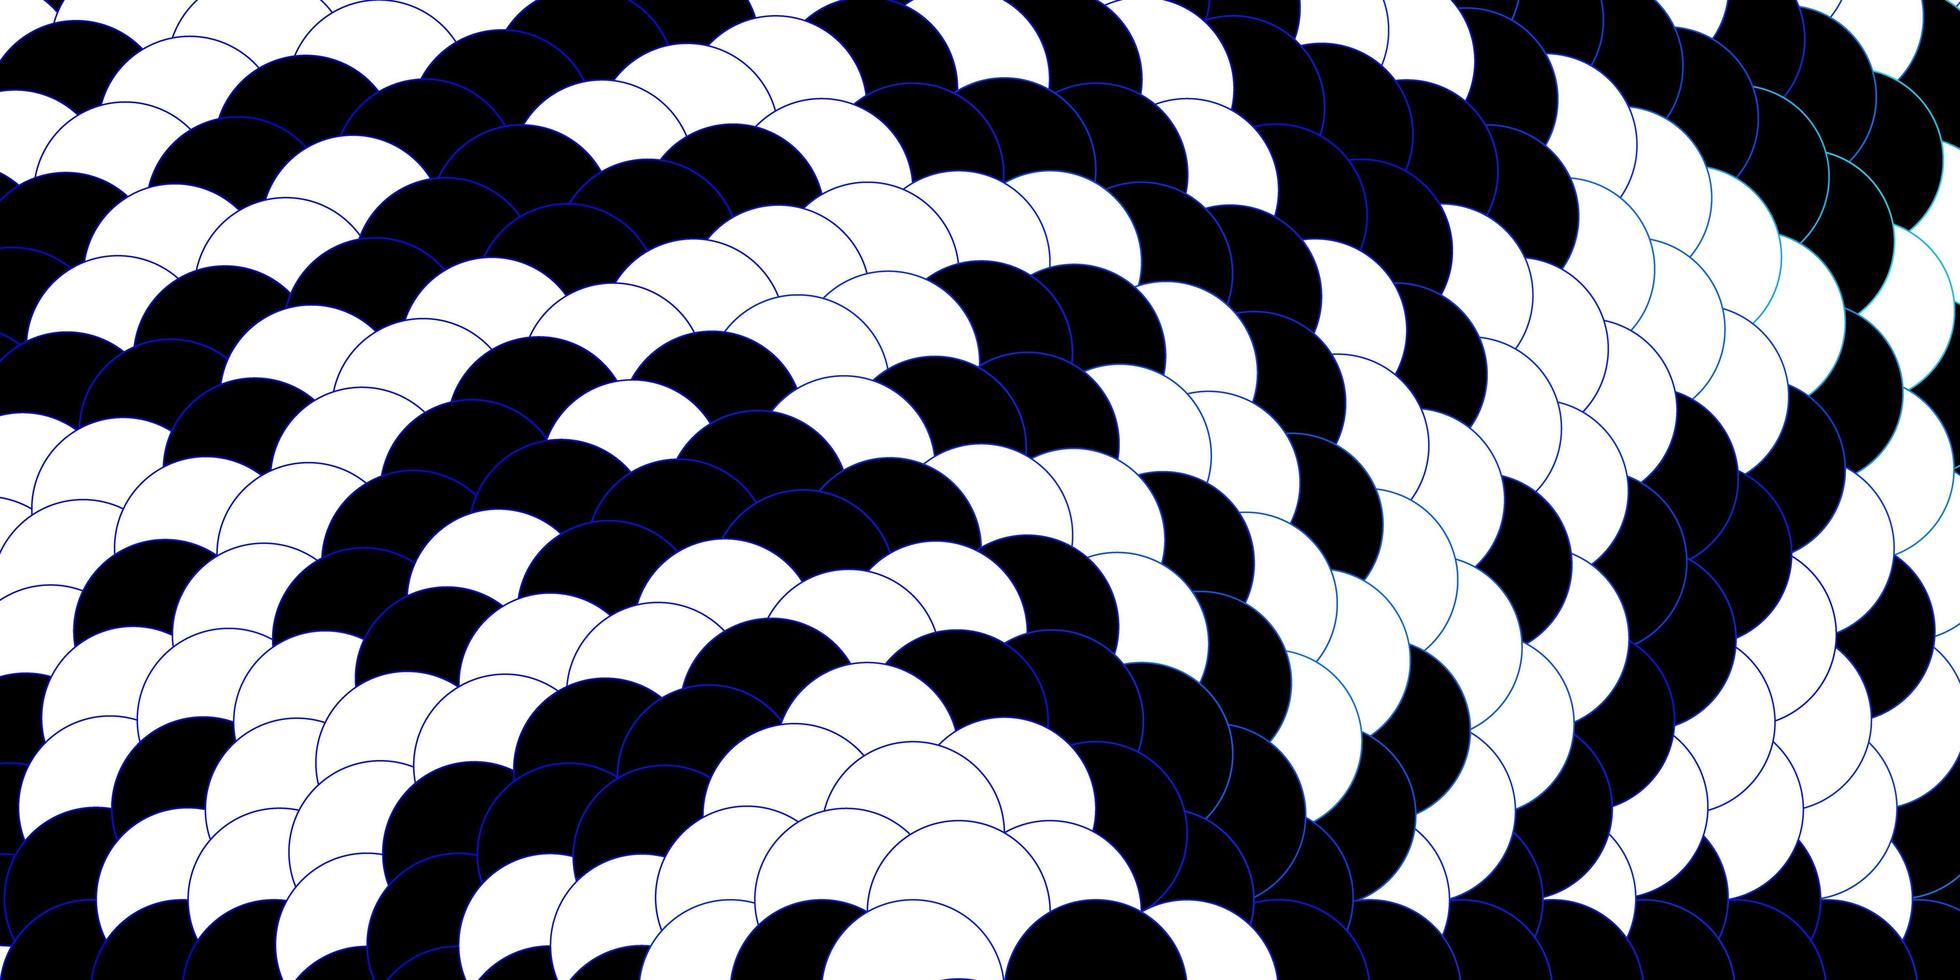 modèle vectoriel bleu foncé avec des cercles.